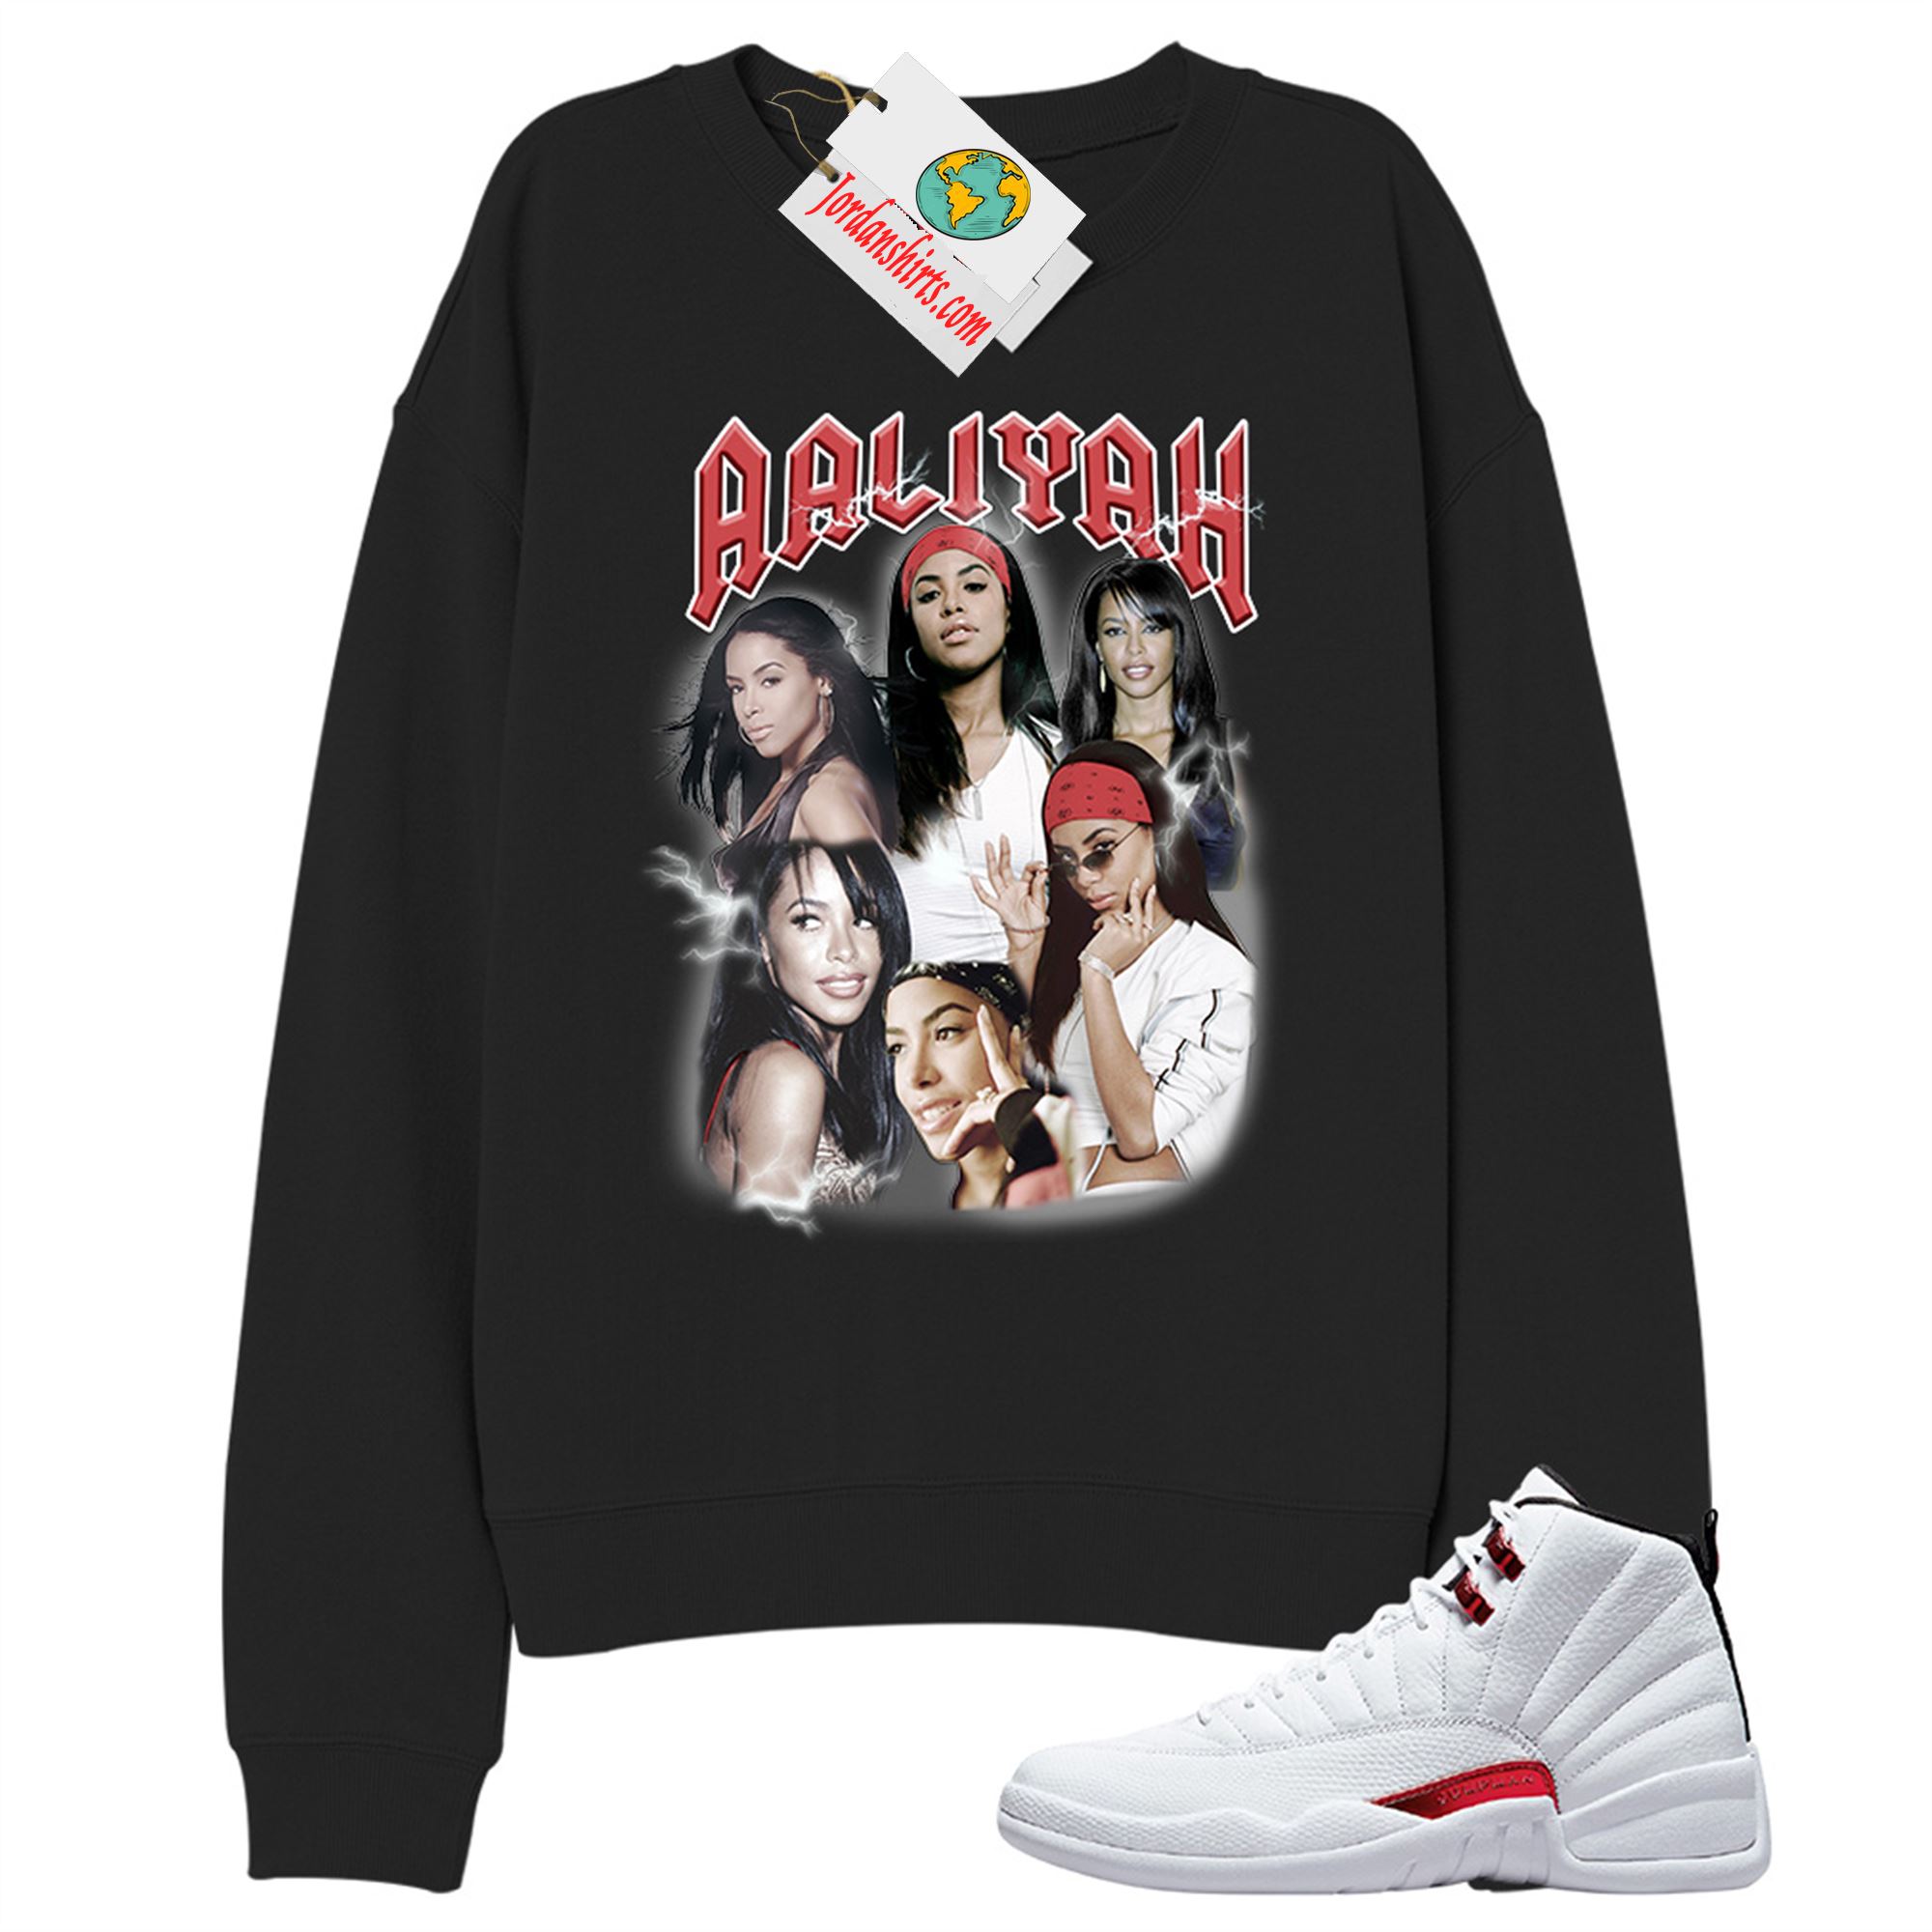 Jordan 12 Sweatshirt, Aaliyah Vintage Black Sweatshirt Air Jordan 12 Twist 12s Size Up To 5xl